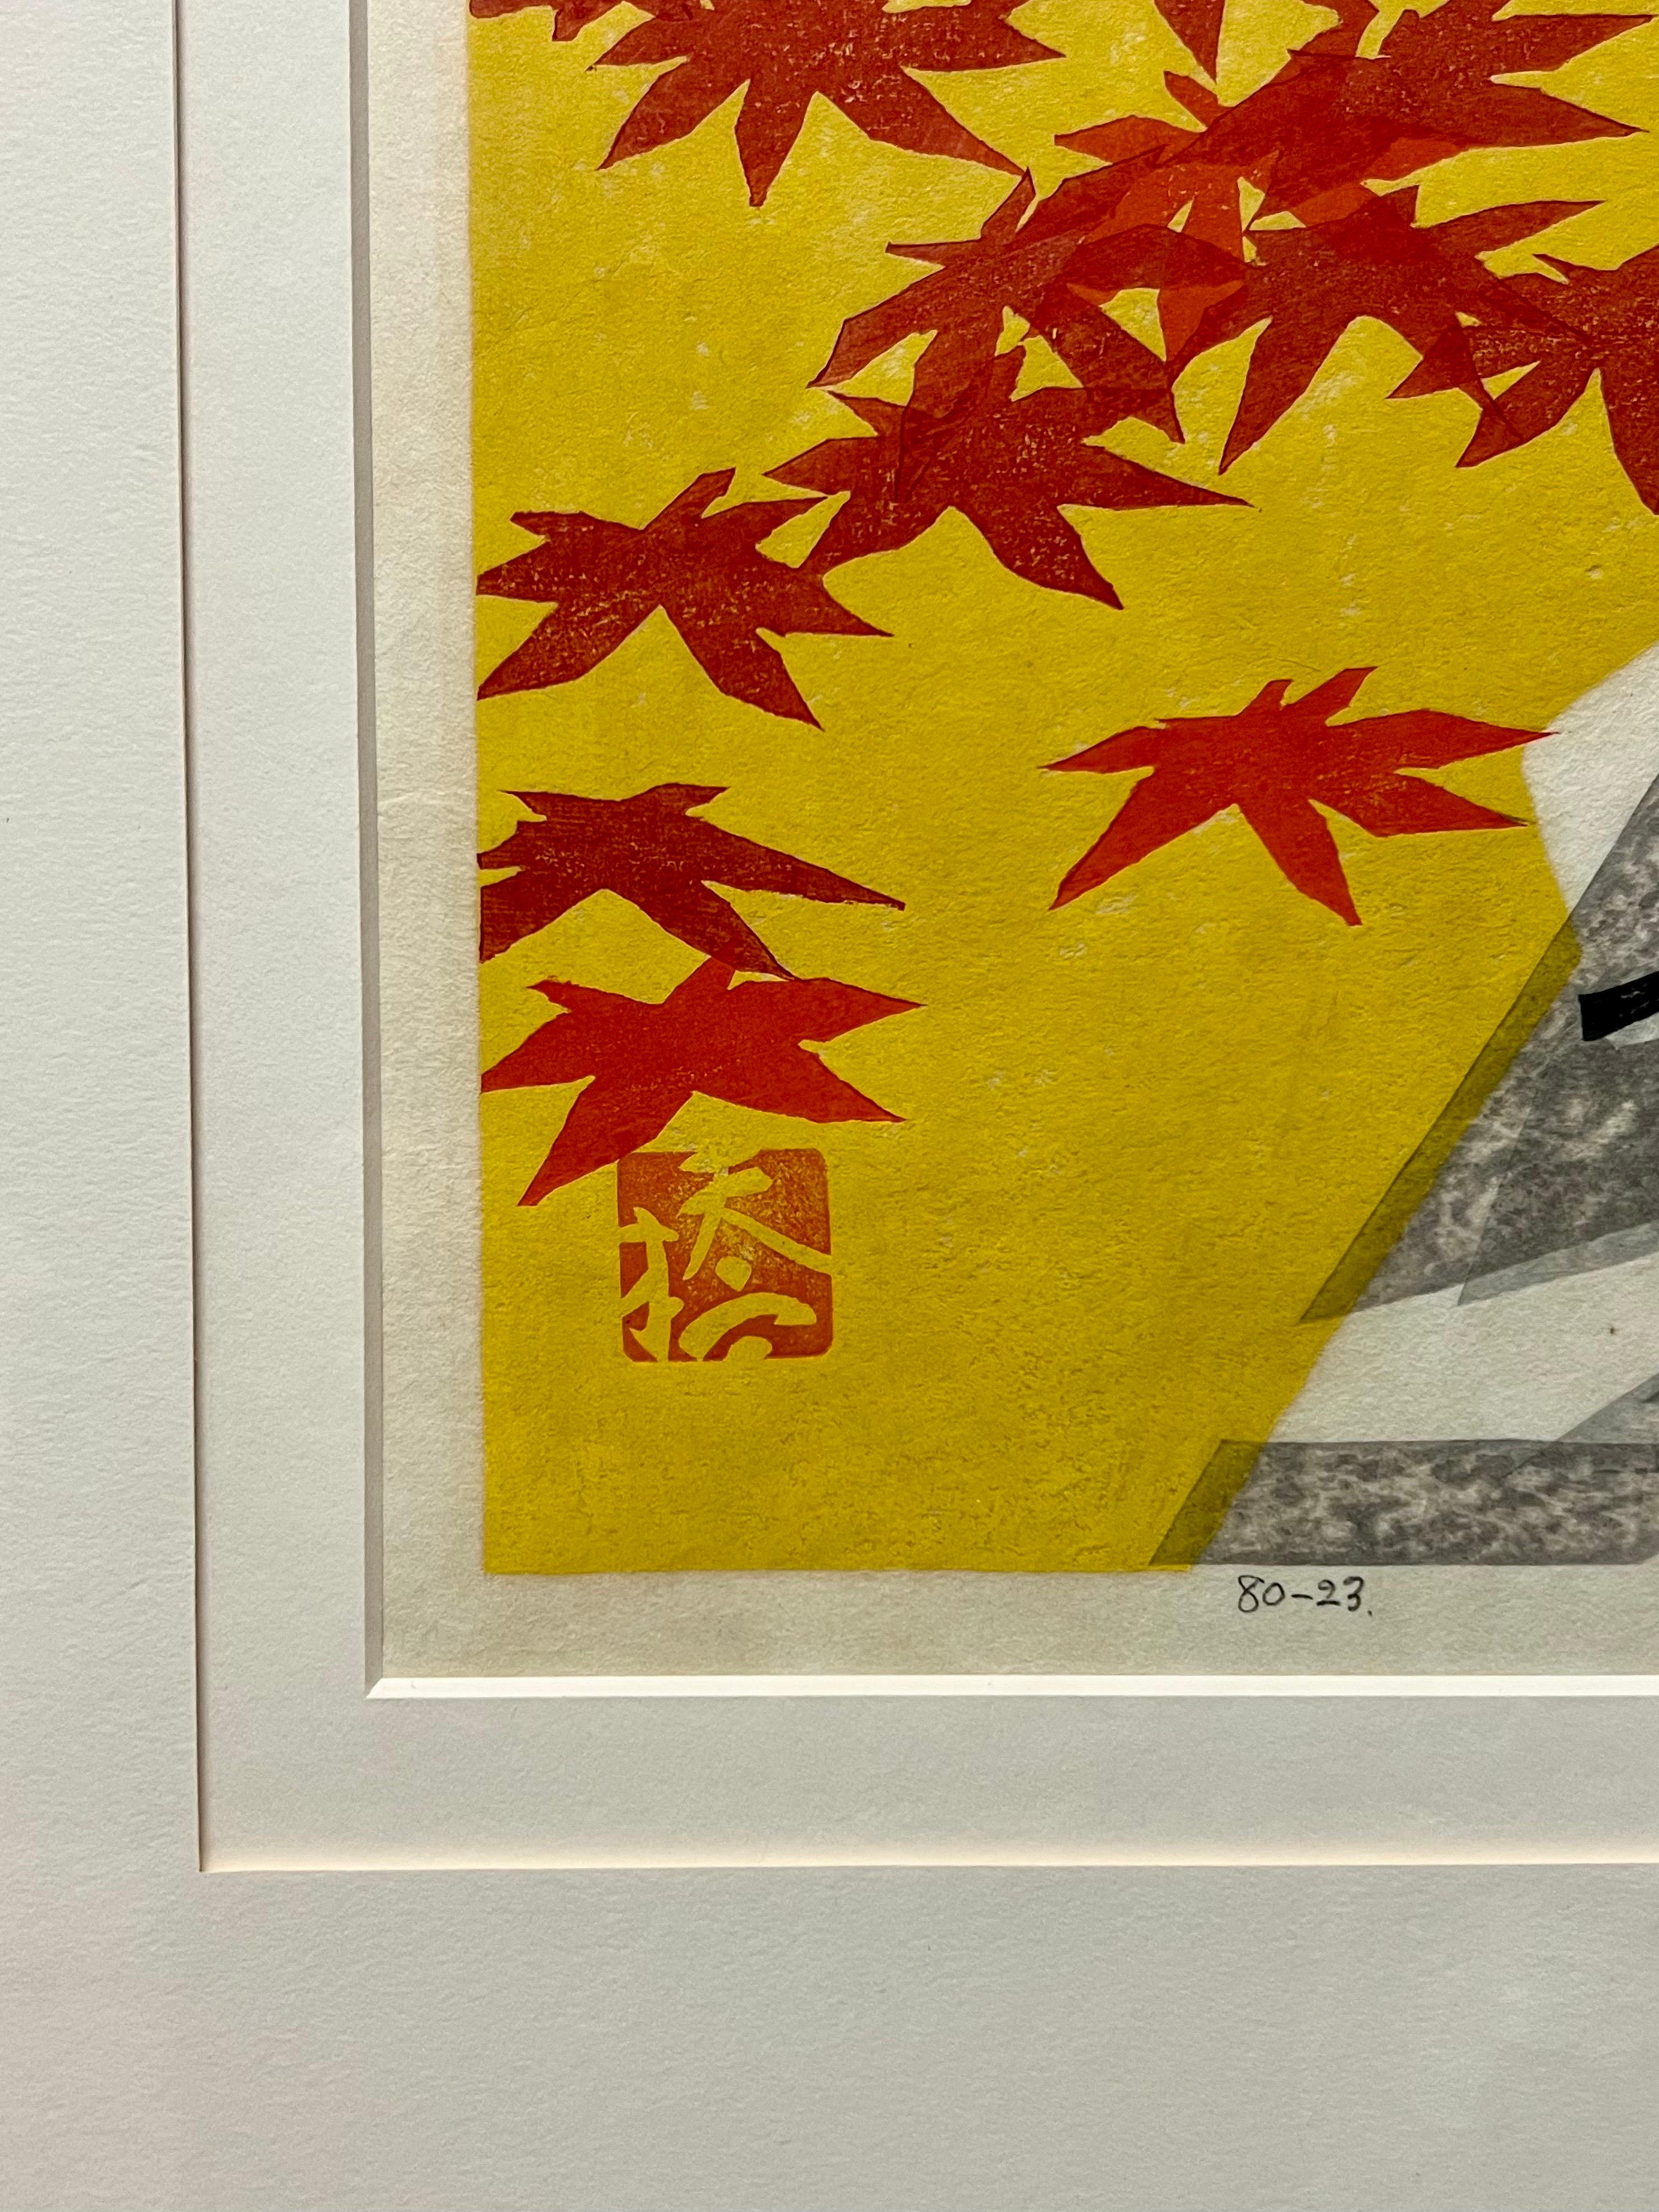 Wunderschöner abstrakter Holzschnitt des bekannten Künstlers Okiie Hashimoto, um 1969. Professionell gerahmt in einem Metallrahmen mit mattem Messing-Finish. 

Okiie Hashimoto war ein japanischer Künstler und Pädagoge. Am bekanntesten ist er als